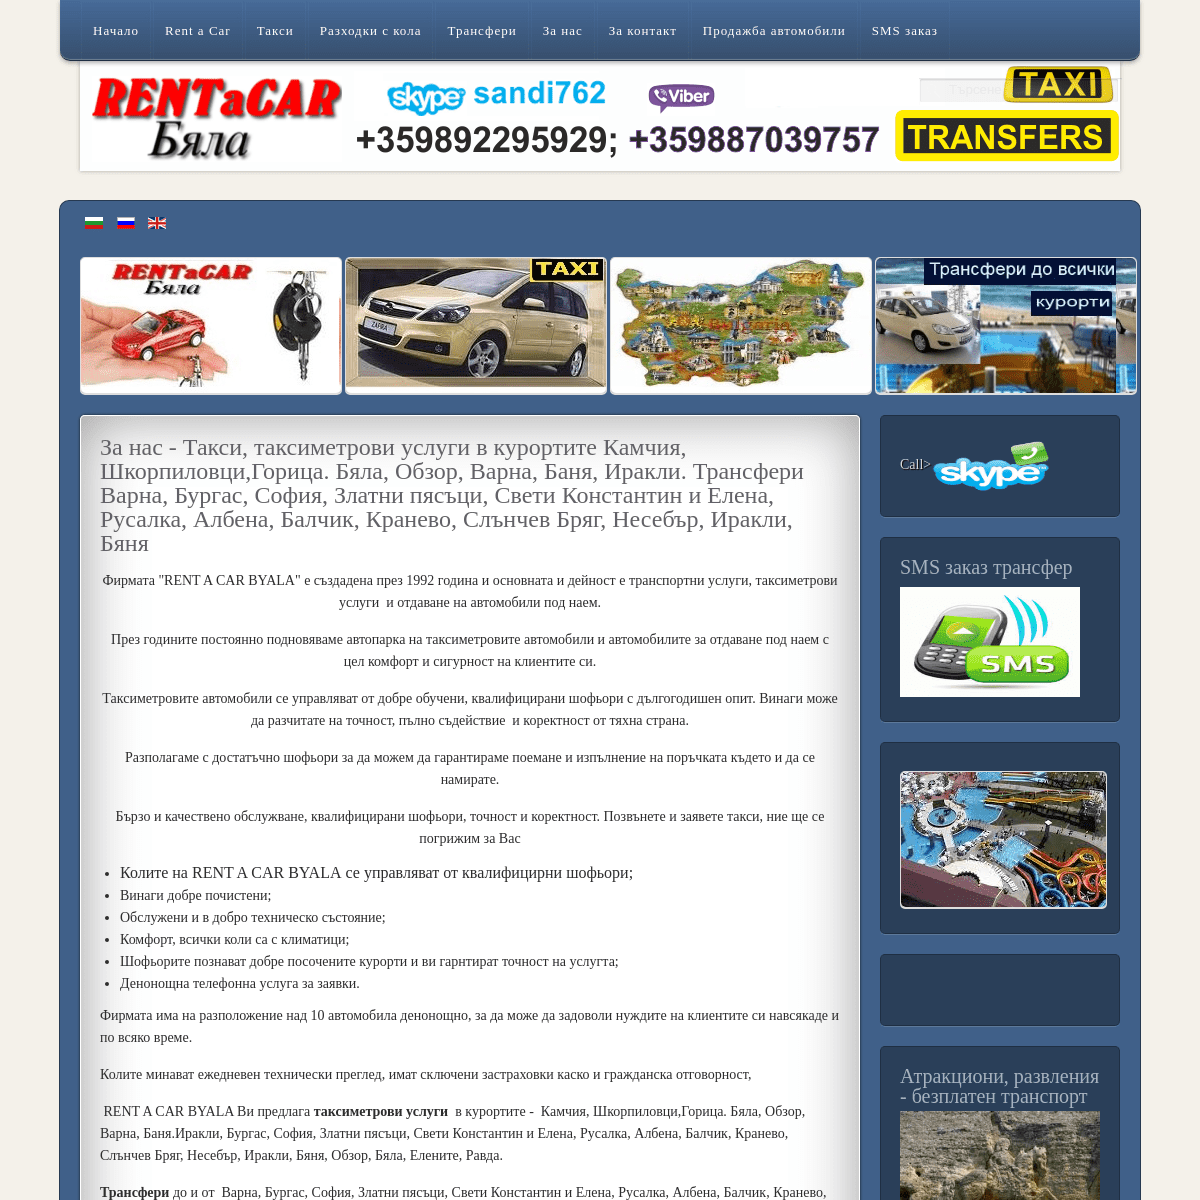 A complete backup of rentacar-byala.com